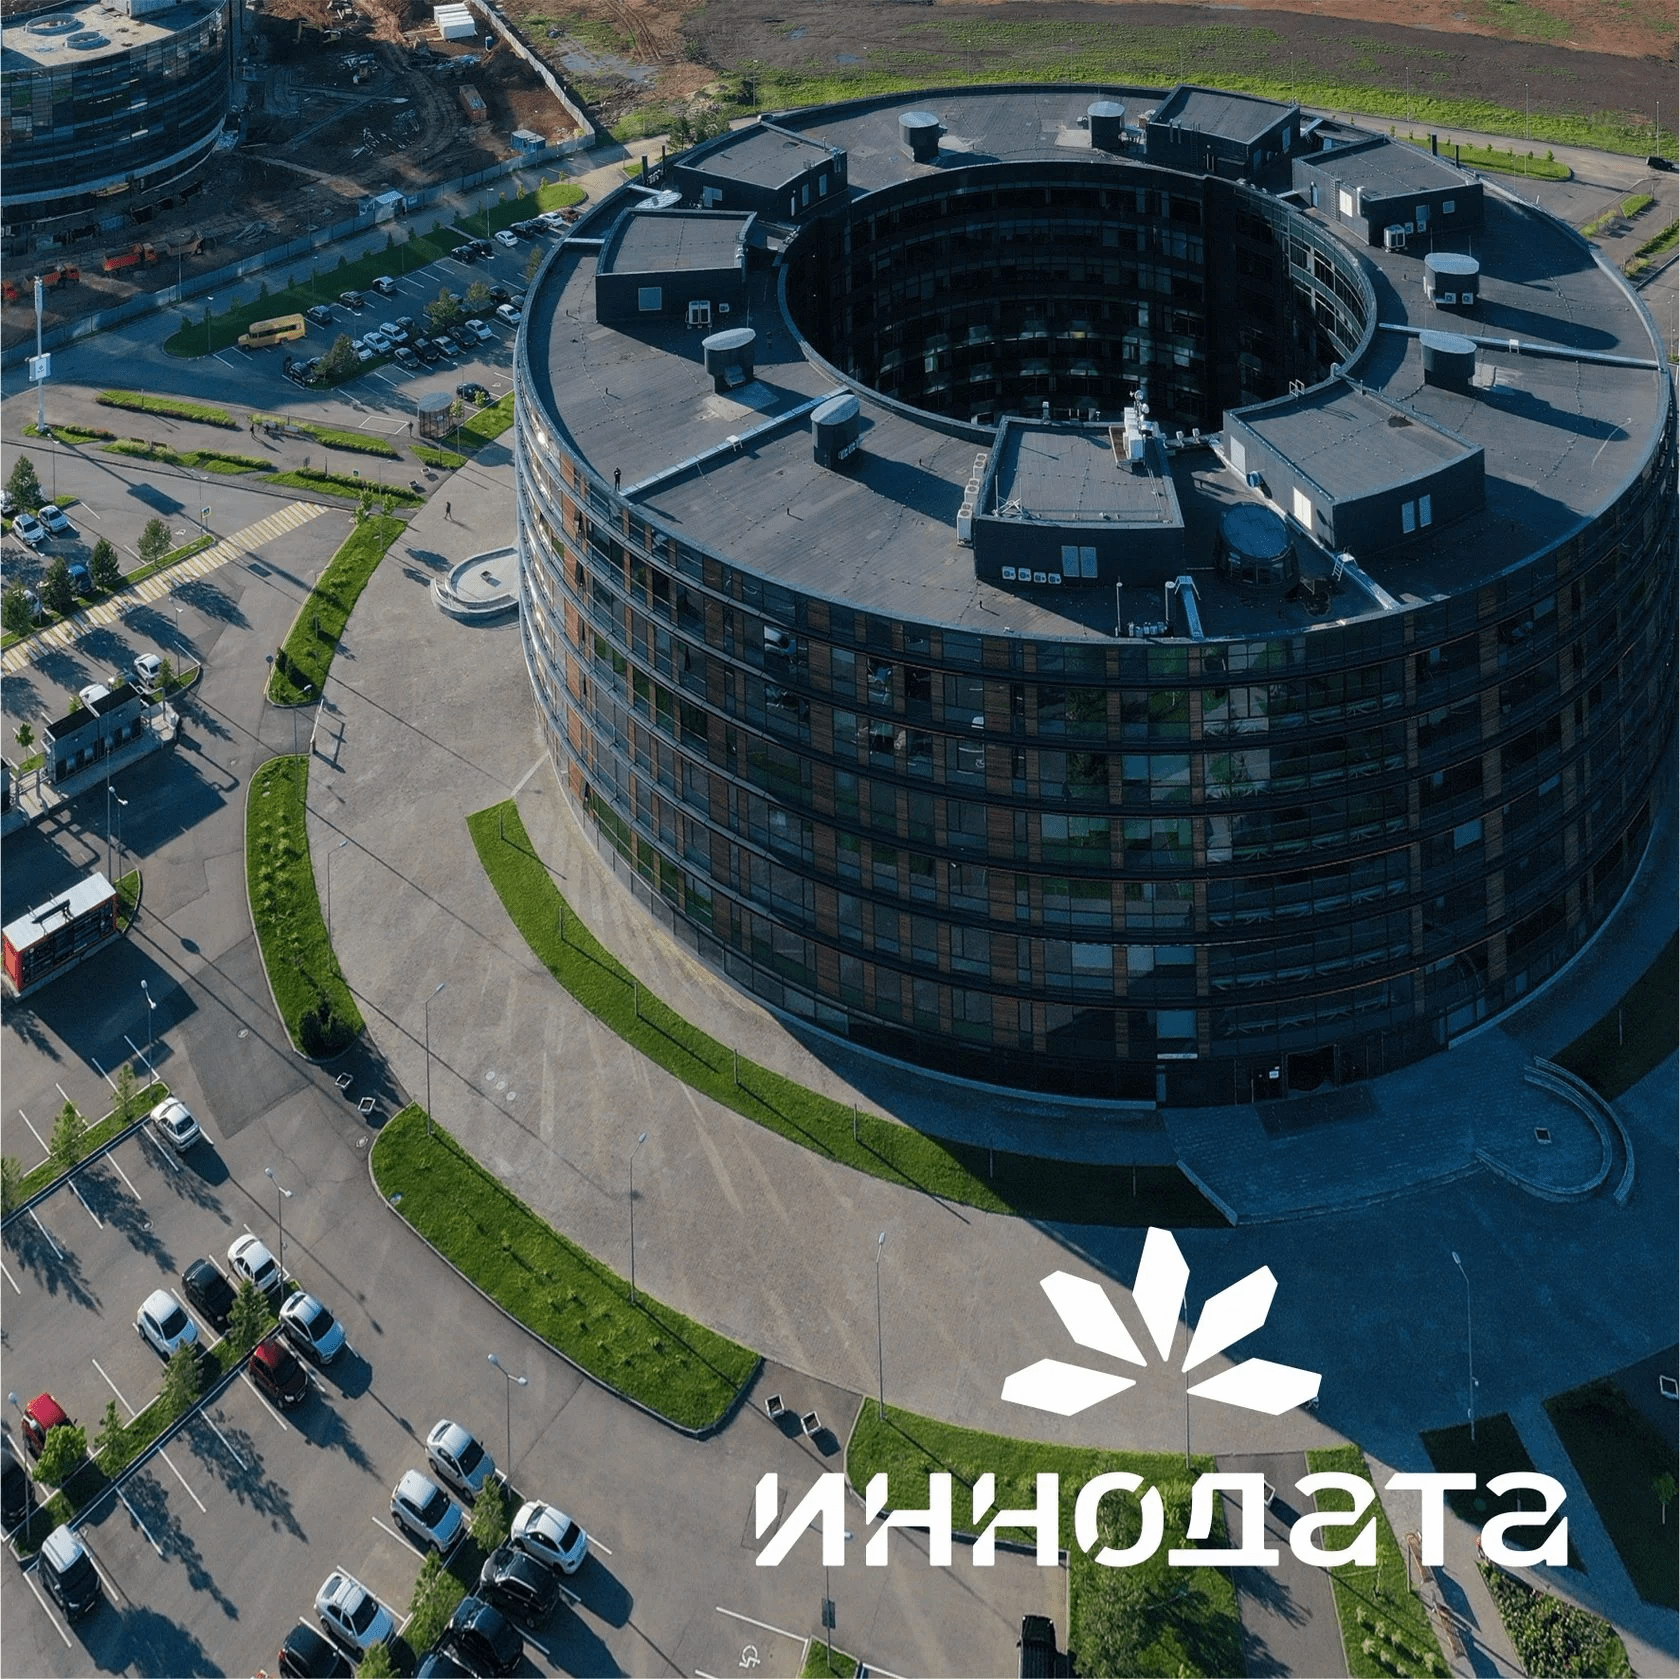 «Иннодата» вошла в Топ-10 крупнейших поставщиков IT-решений для анализа данных в России.